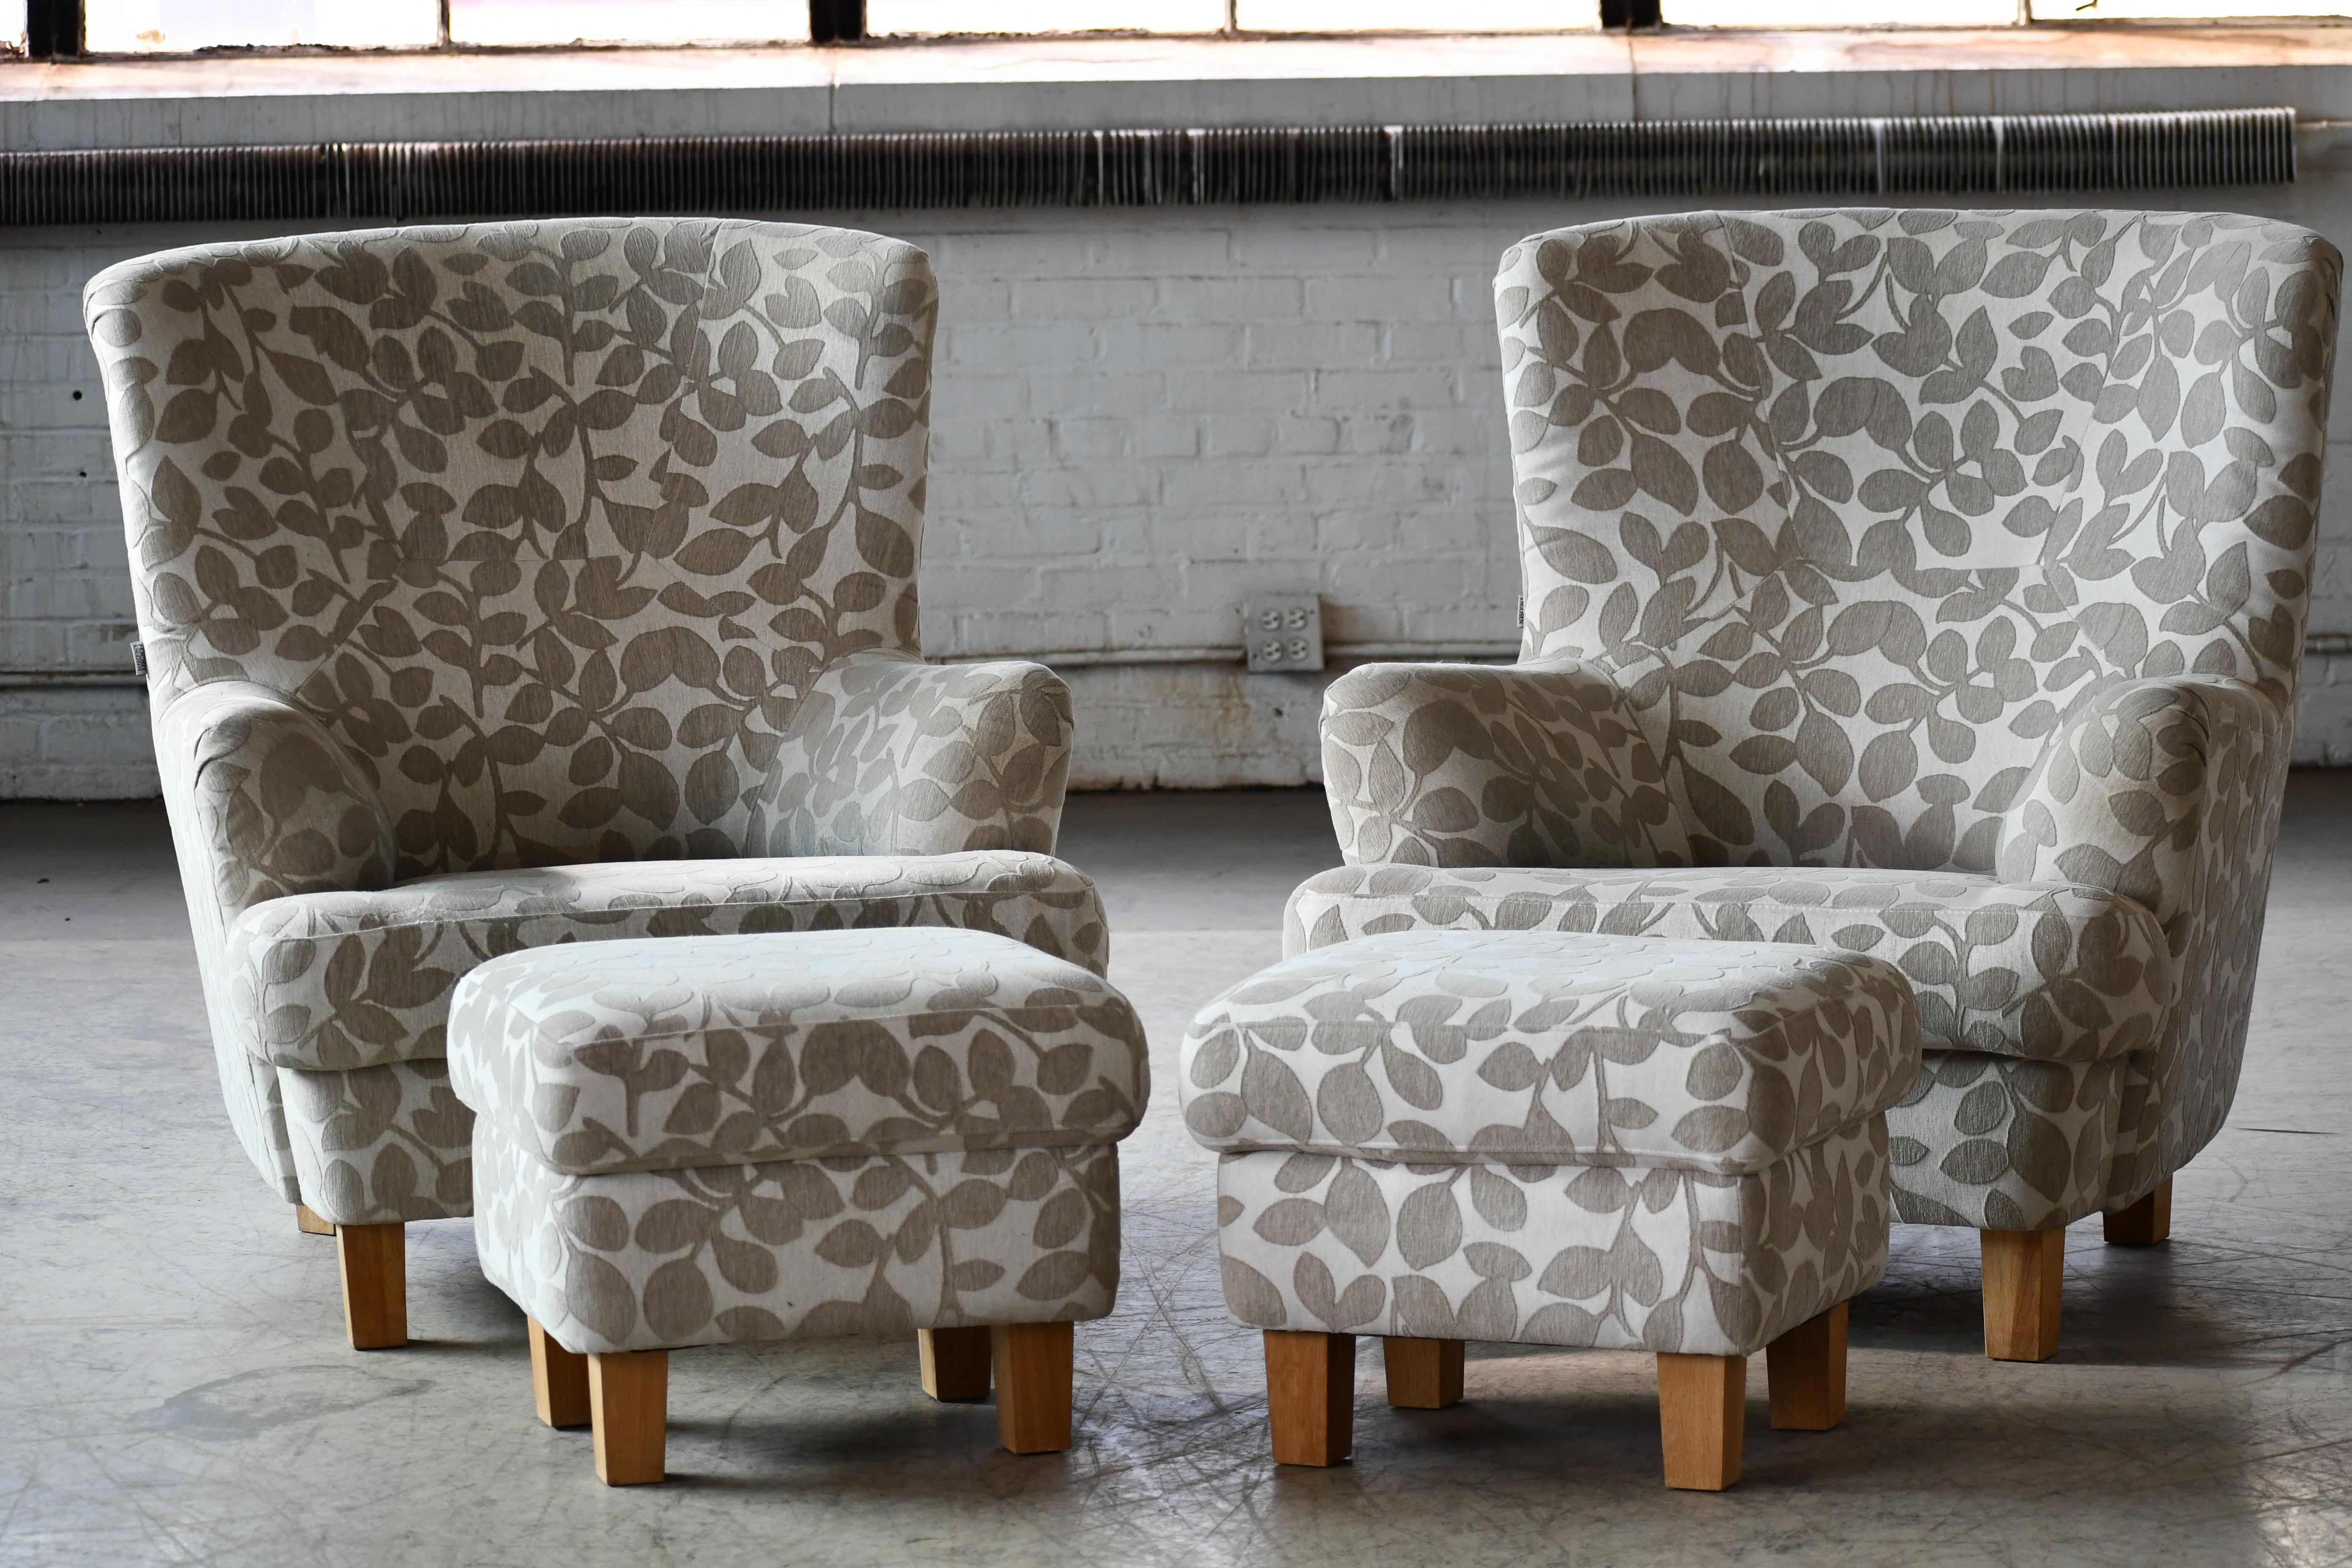 Ein Paar große dänische Club- oder Loungesessel neuerer Herstellung im Stil der Stühle der 1940er Jahre, aber wahrscheinlich um 2000 hergestellt. Wir fanden die Stühle in Dänemark, und dem Aussehen nach schienen sie aus den 1940er Jahren zu stammen,